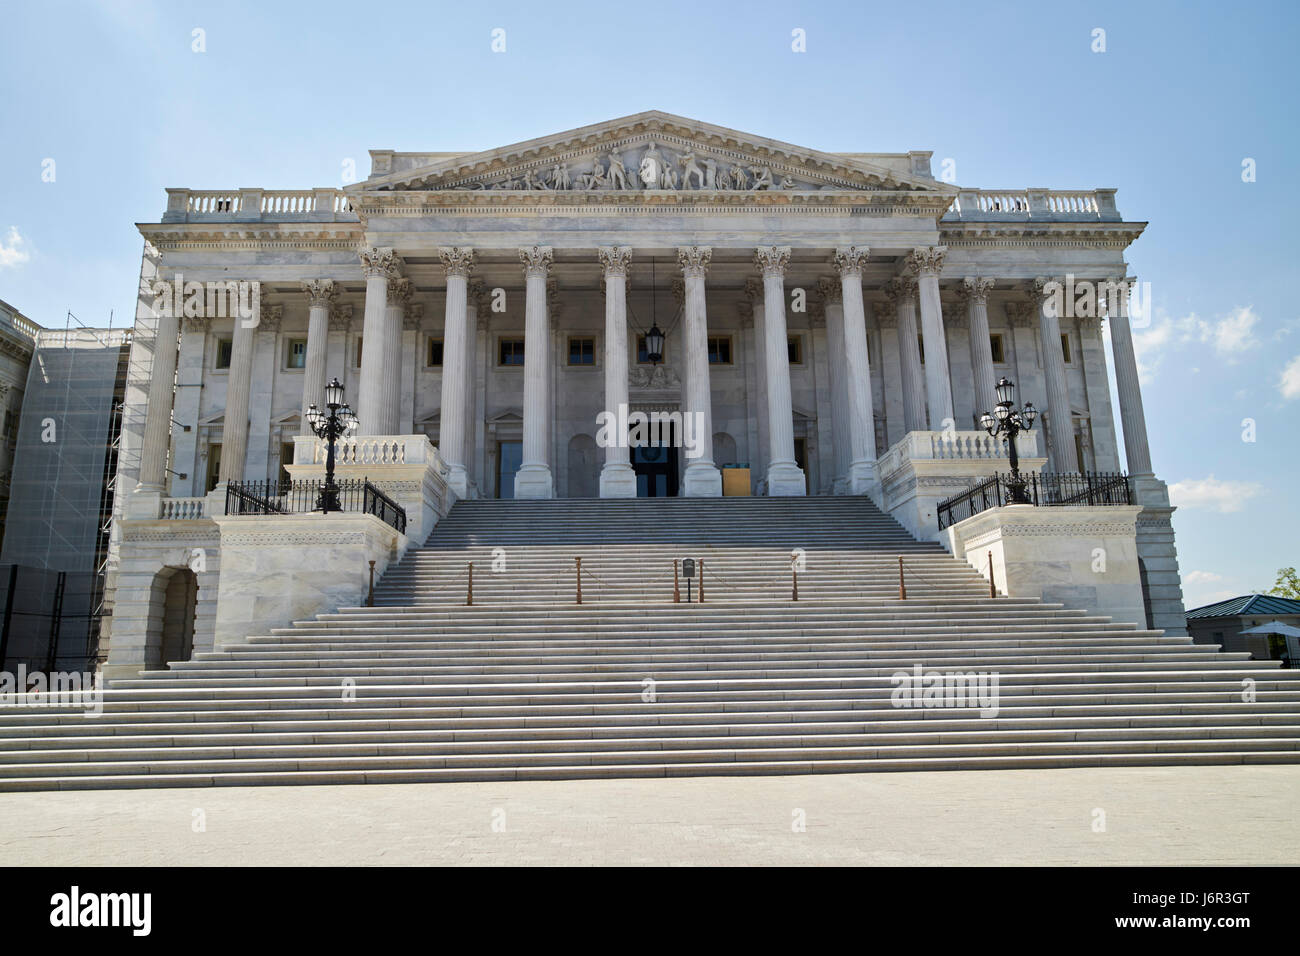 Senat Kammer Bau des United States Capitol Gebäude Washington DC USA Stockfoto